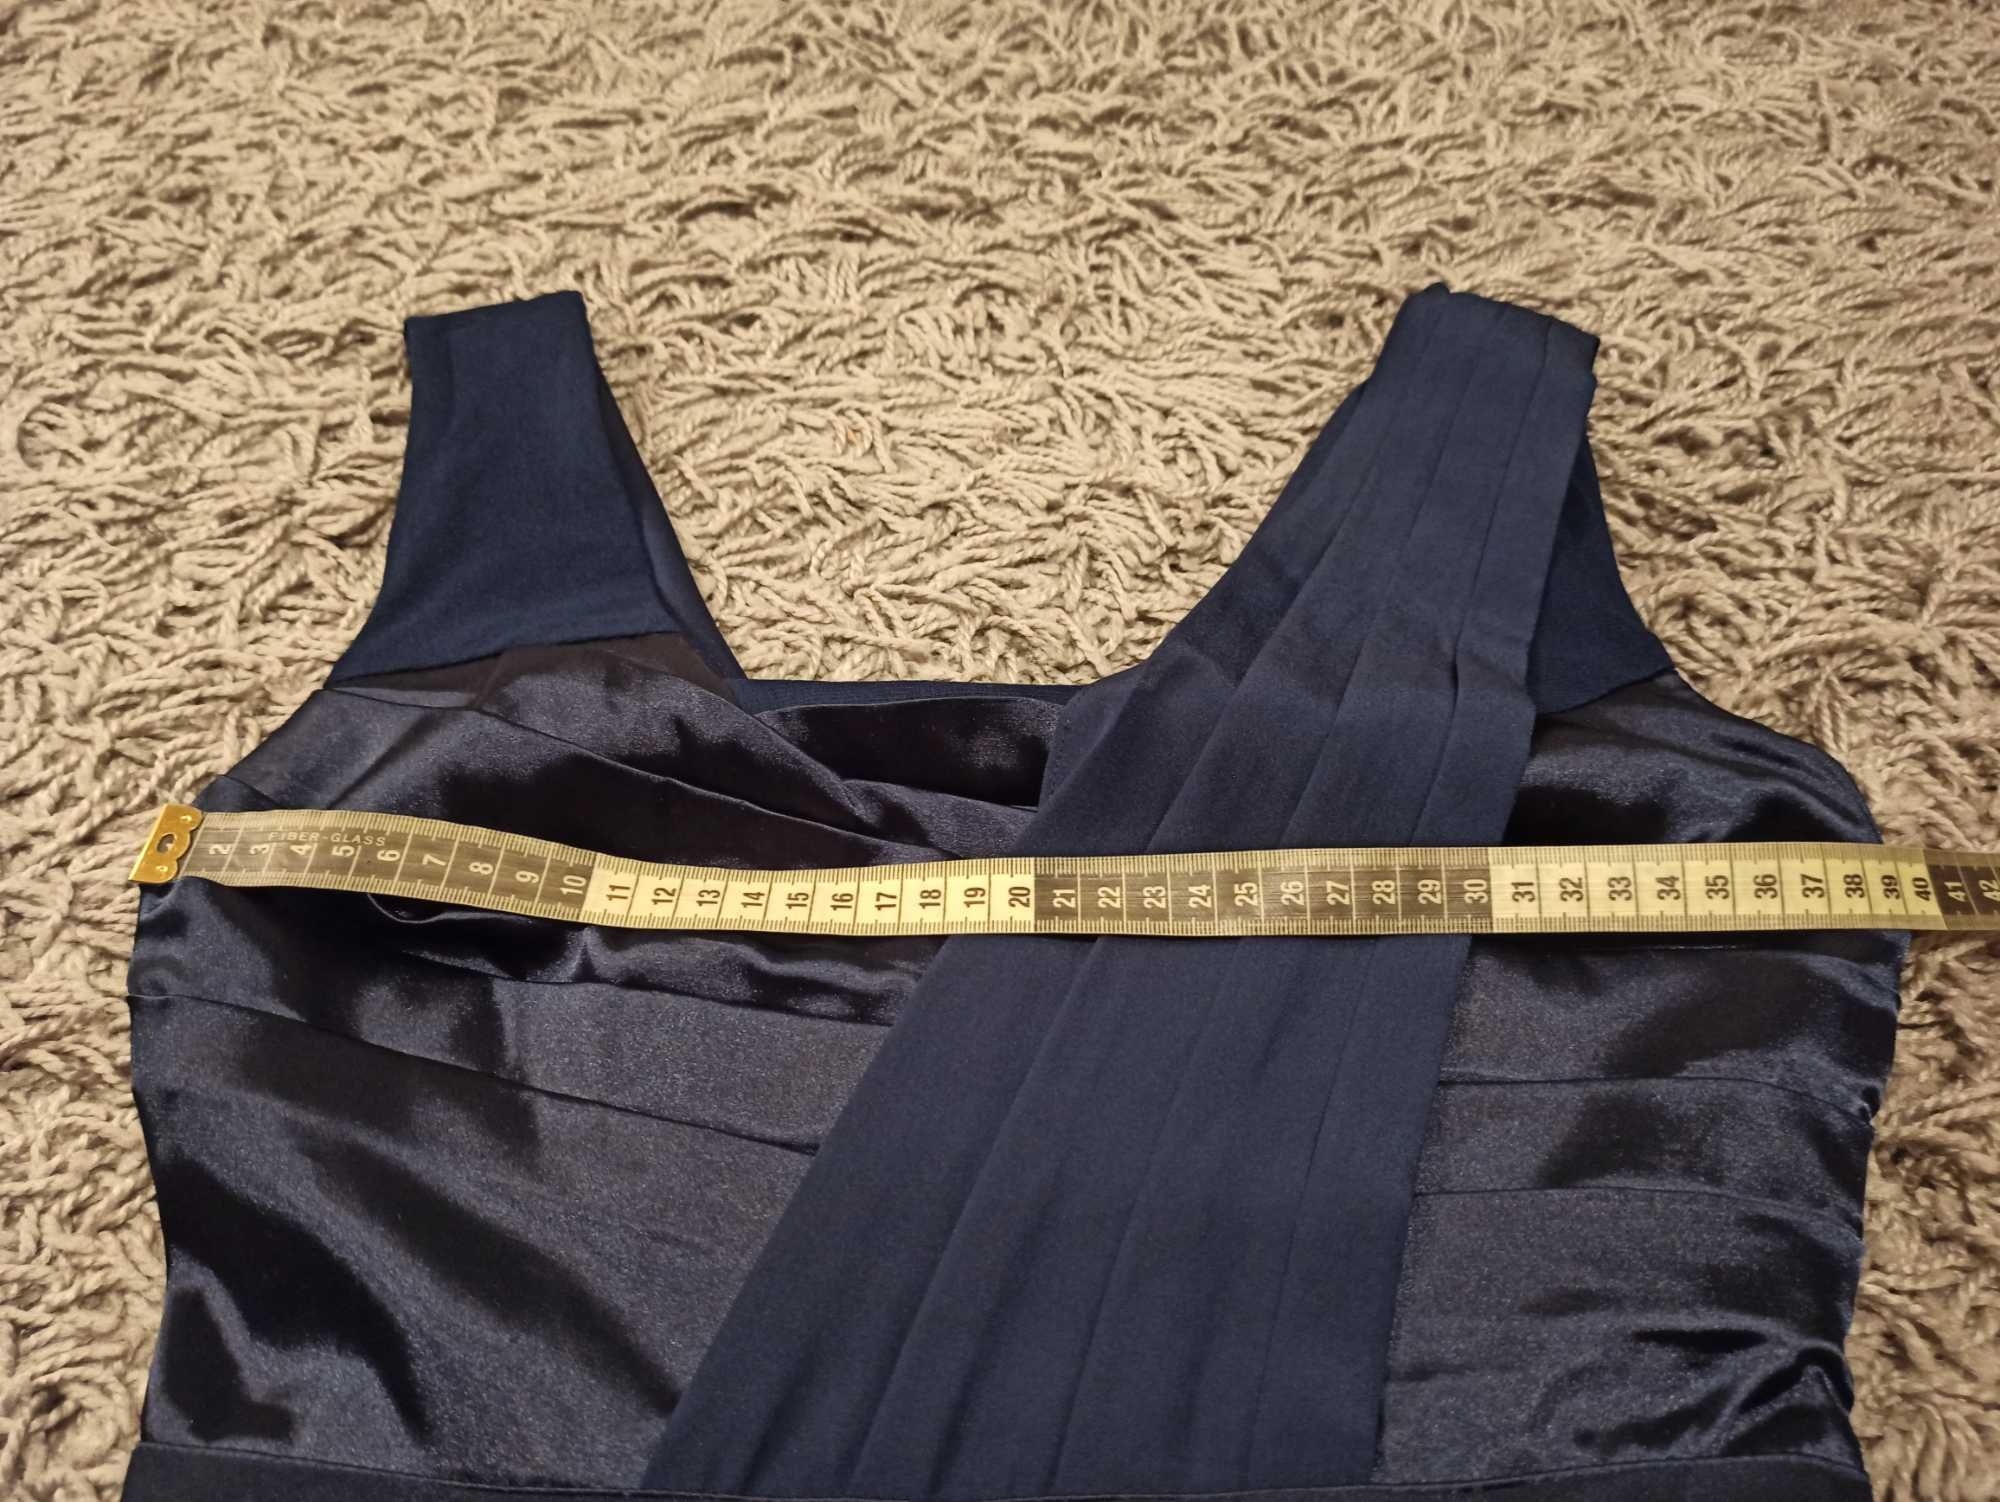 Krótka sukienka asymetryczna na ramiączkach plisowana satyna r.36 Asos